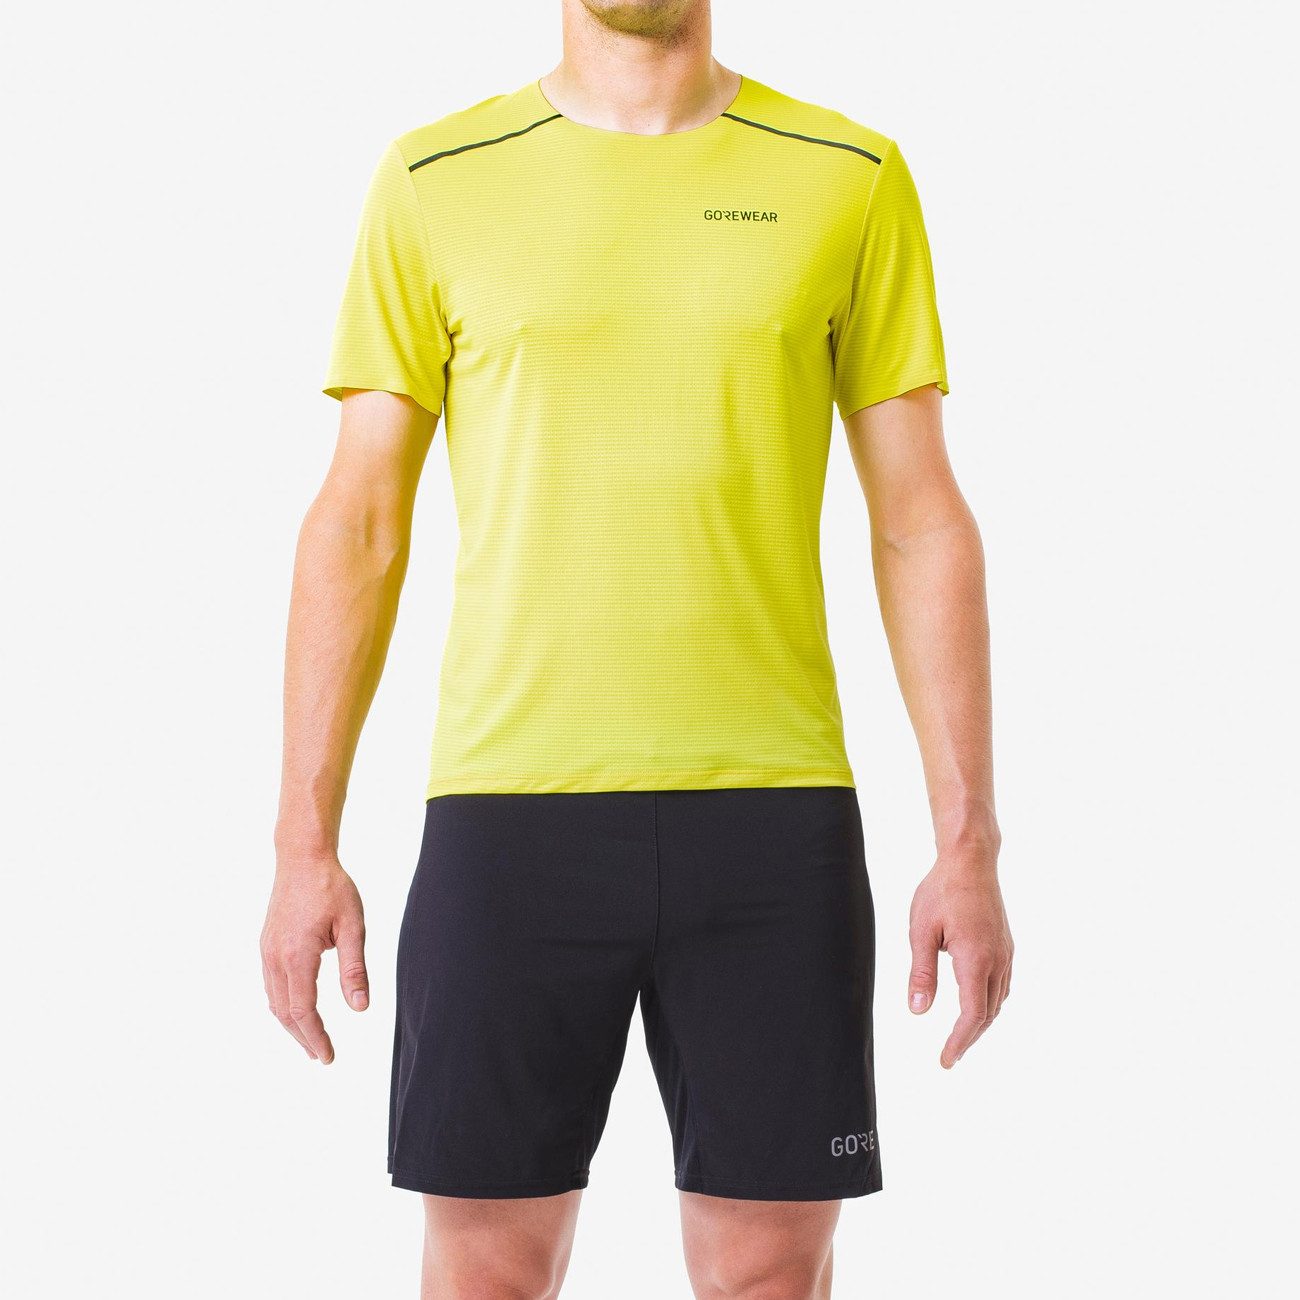 GORE® Wear Laufshirt Gore Wear Contest 2.0 Tee Herren Washed Neon Yellow XL